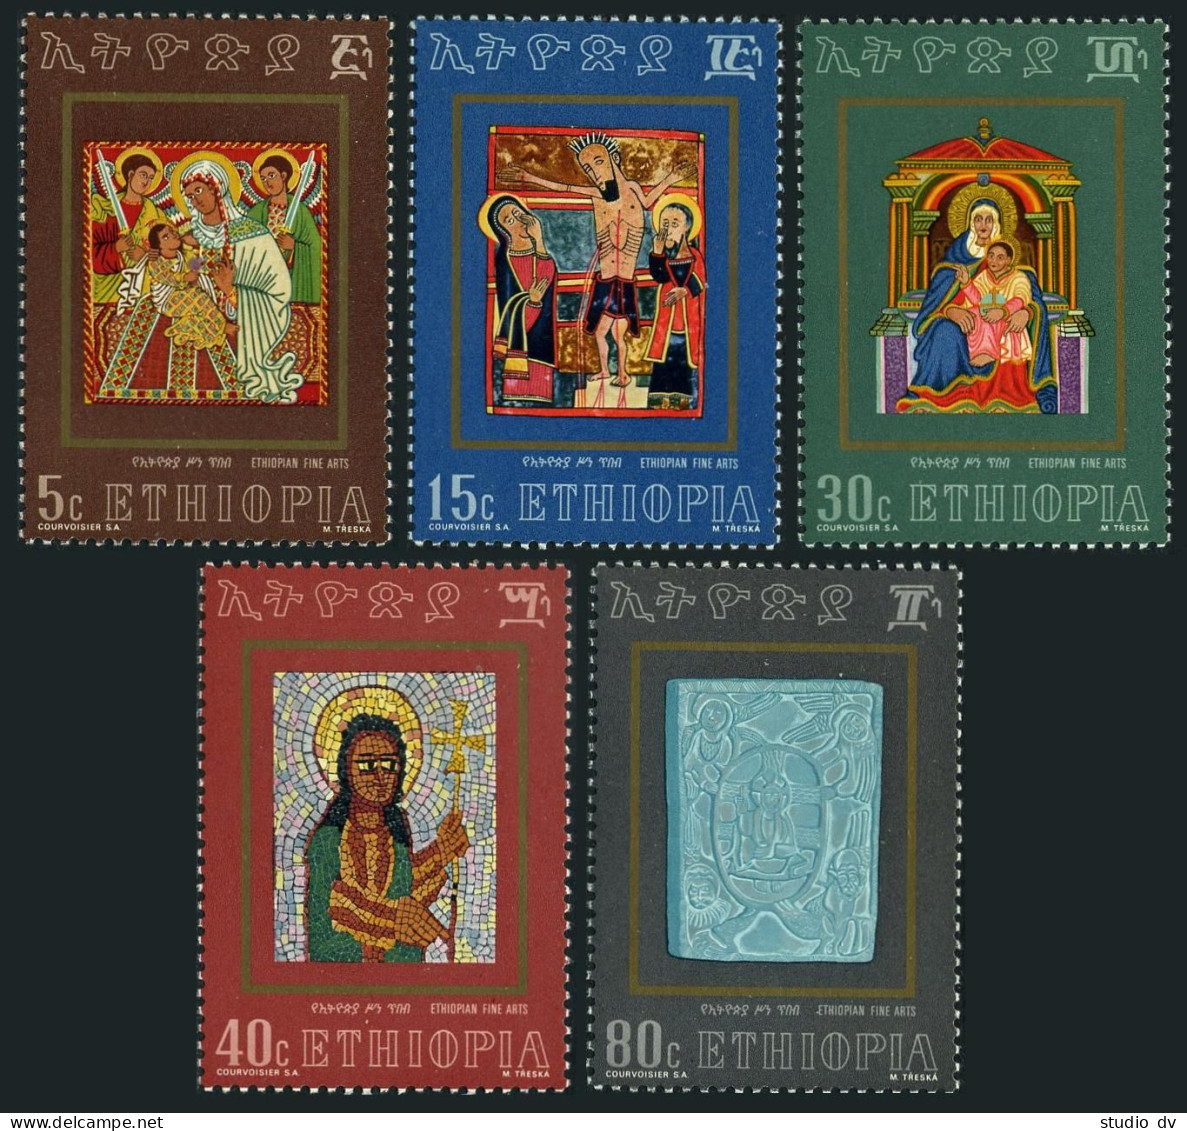 Ethiopia 646-650, MNH. Michel 732-736. Ethiopian Christian Religious Art, 1973. - Ethiopia